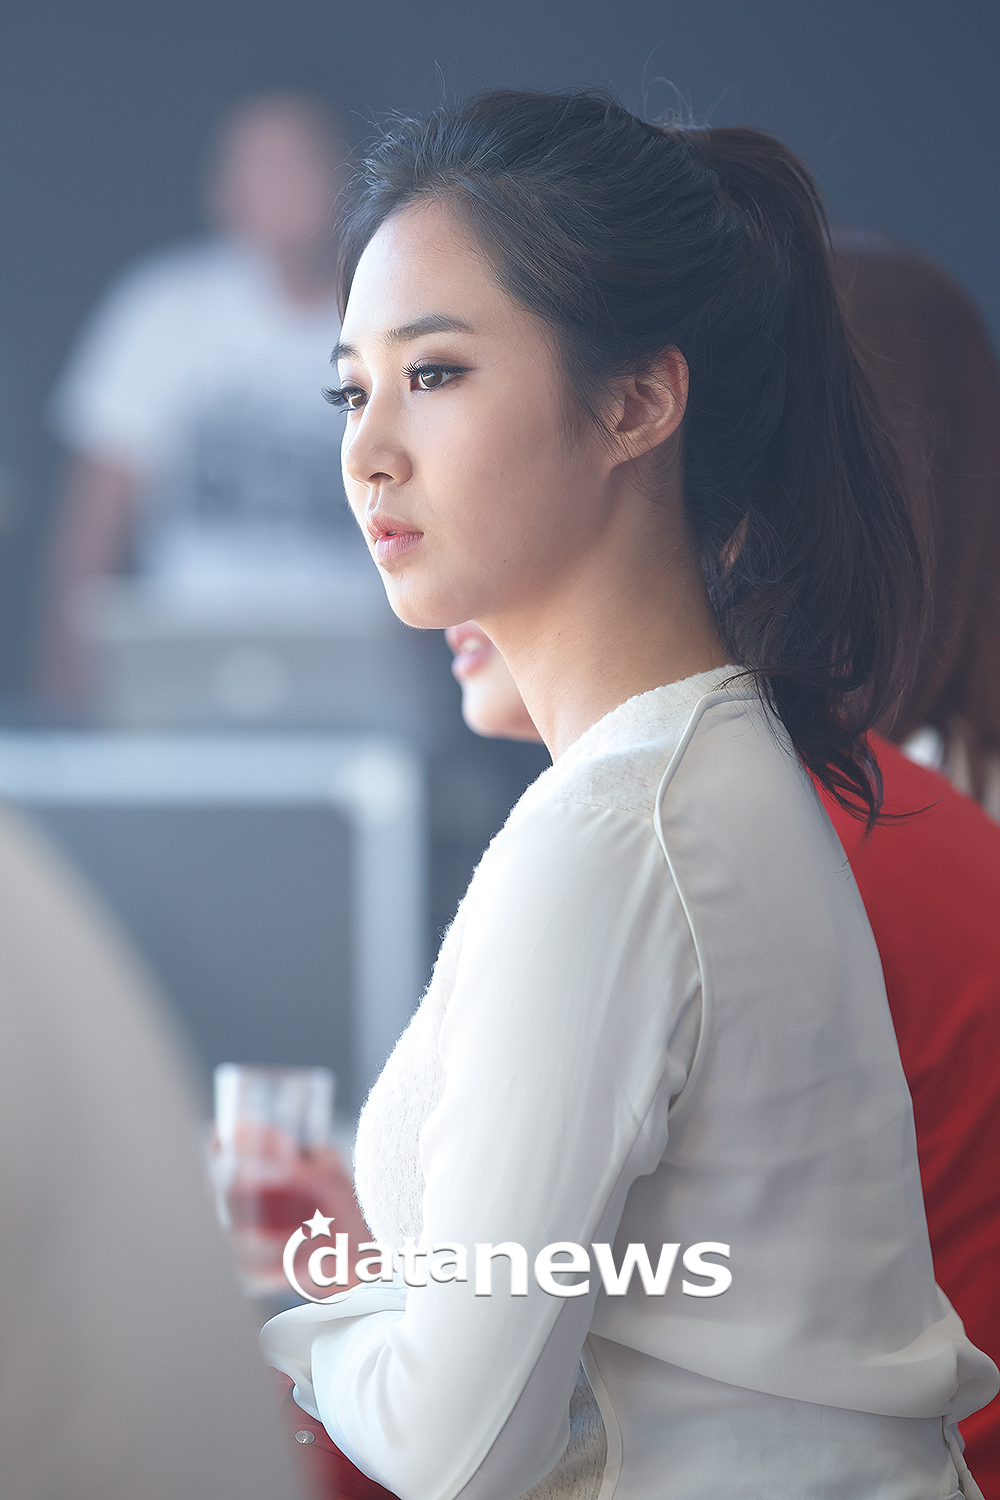 [PIC][30-08-2013]Yuri xuất hiện tại sự kiện khai trương cửa hàng "MOOSE KNUCKLES" vào chiều nay 2224BE5052213D651D4DFF